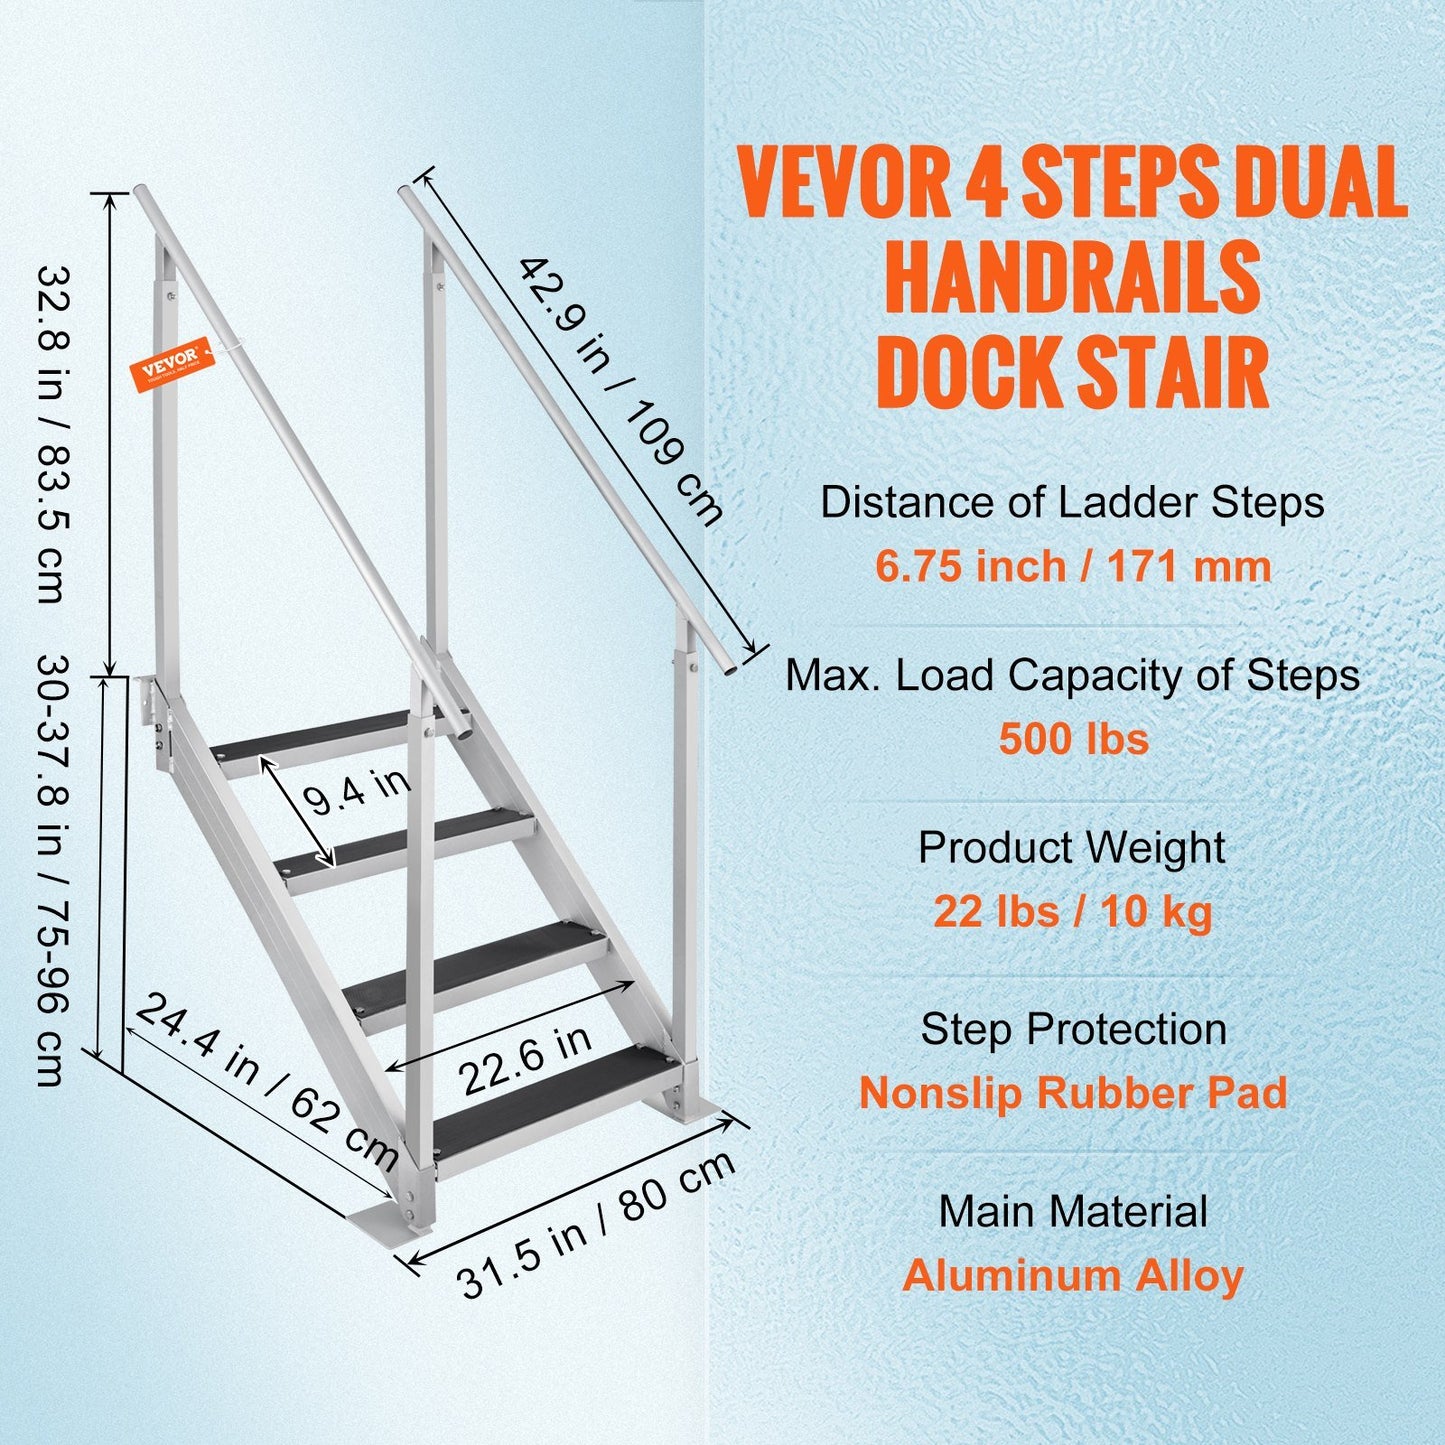 VEVOR Dock Ladder